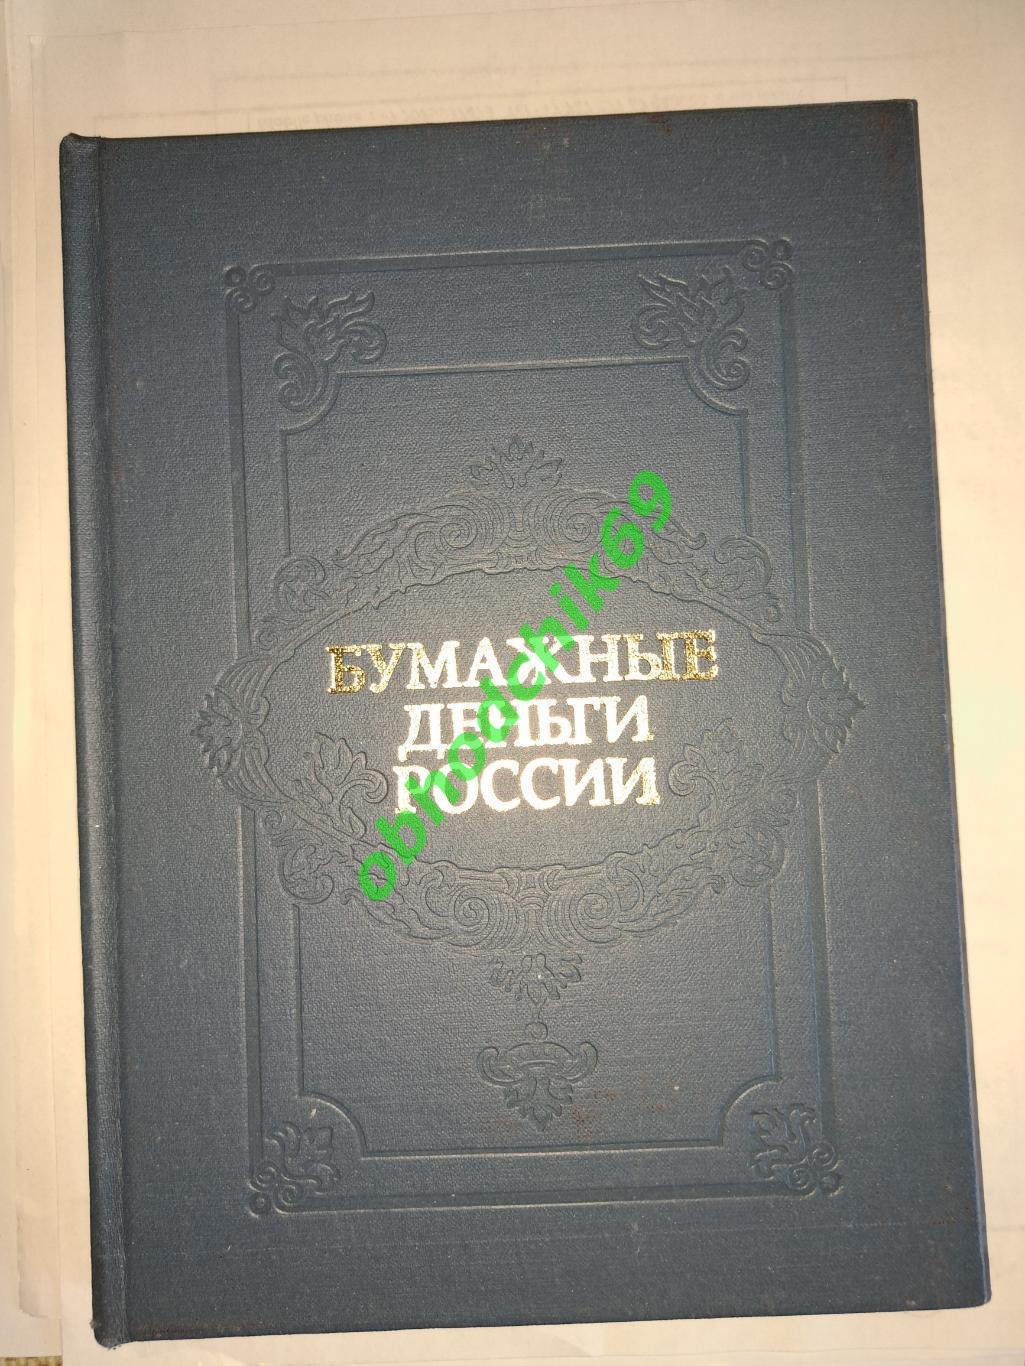 Бумажные деньги России А.Михаэлис Л Харламов 1993 г , изд Гознак